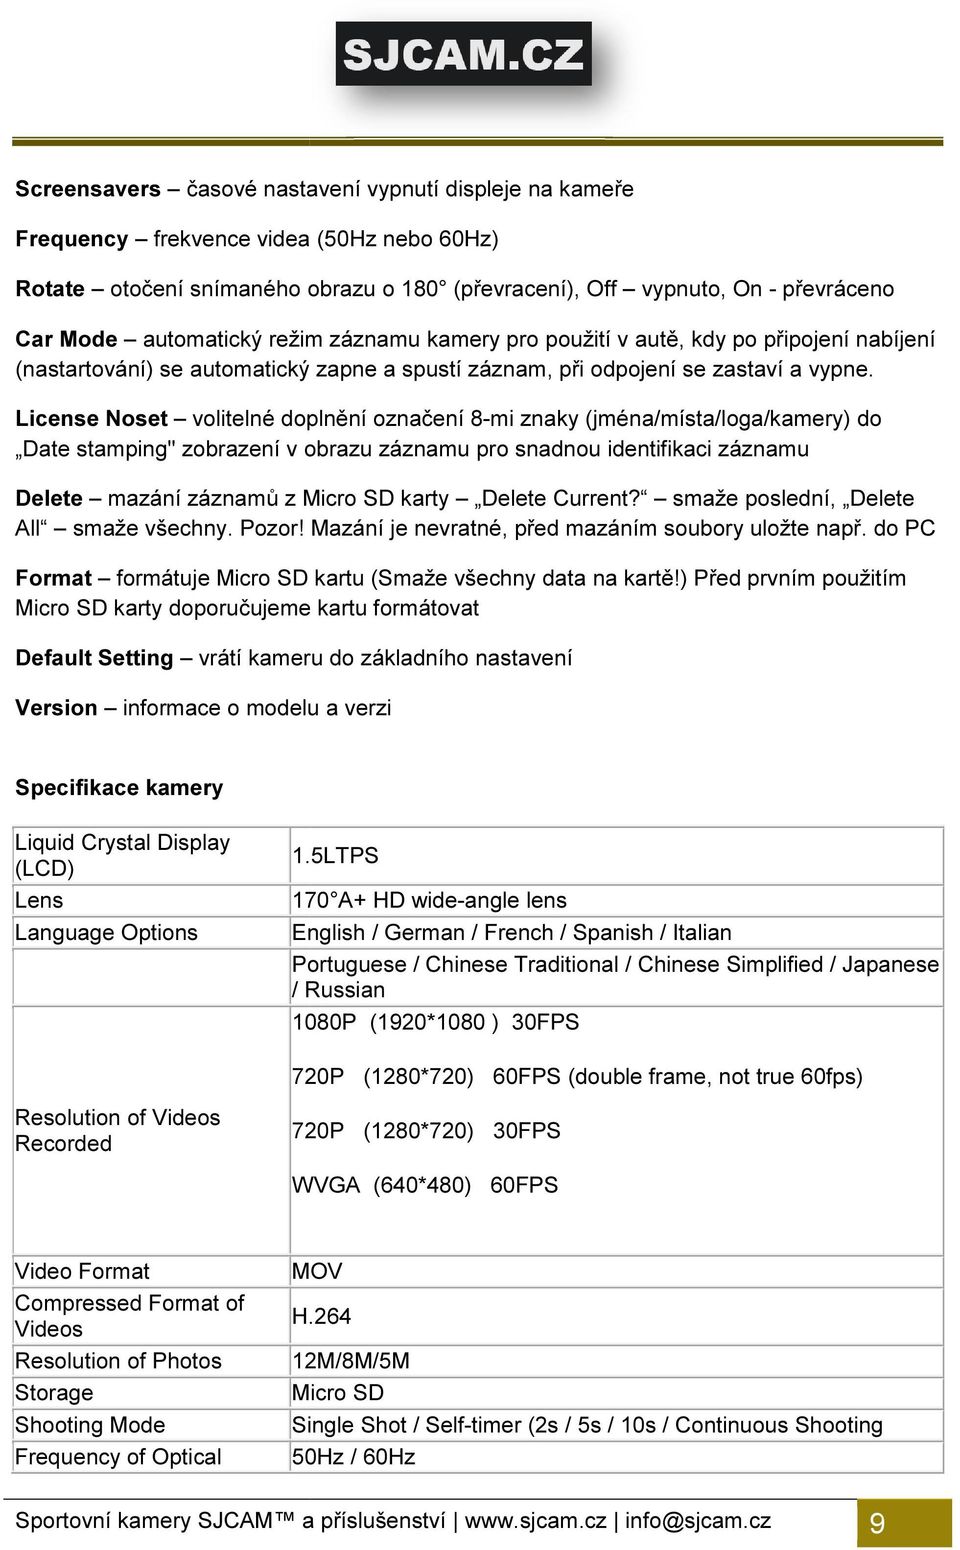 License Noset volitelné doplnění označení 8-mi znaky (jména/místa/loga/kamery) do Date stamping" zobrazení v obrazu záznamu pro snadnou identifikaci záznamu Delete mazání záznamů z Micro SD karty